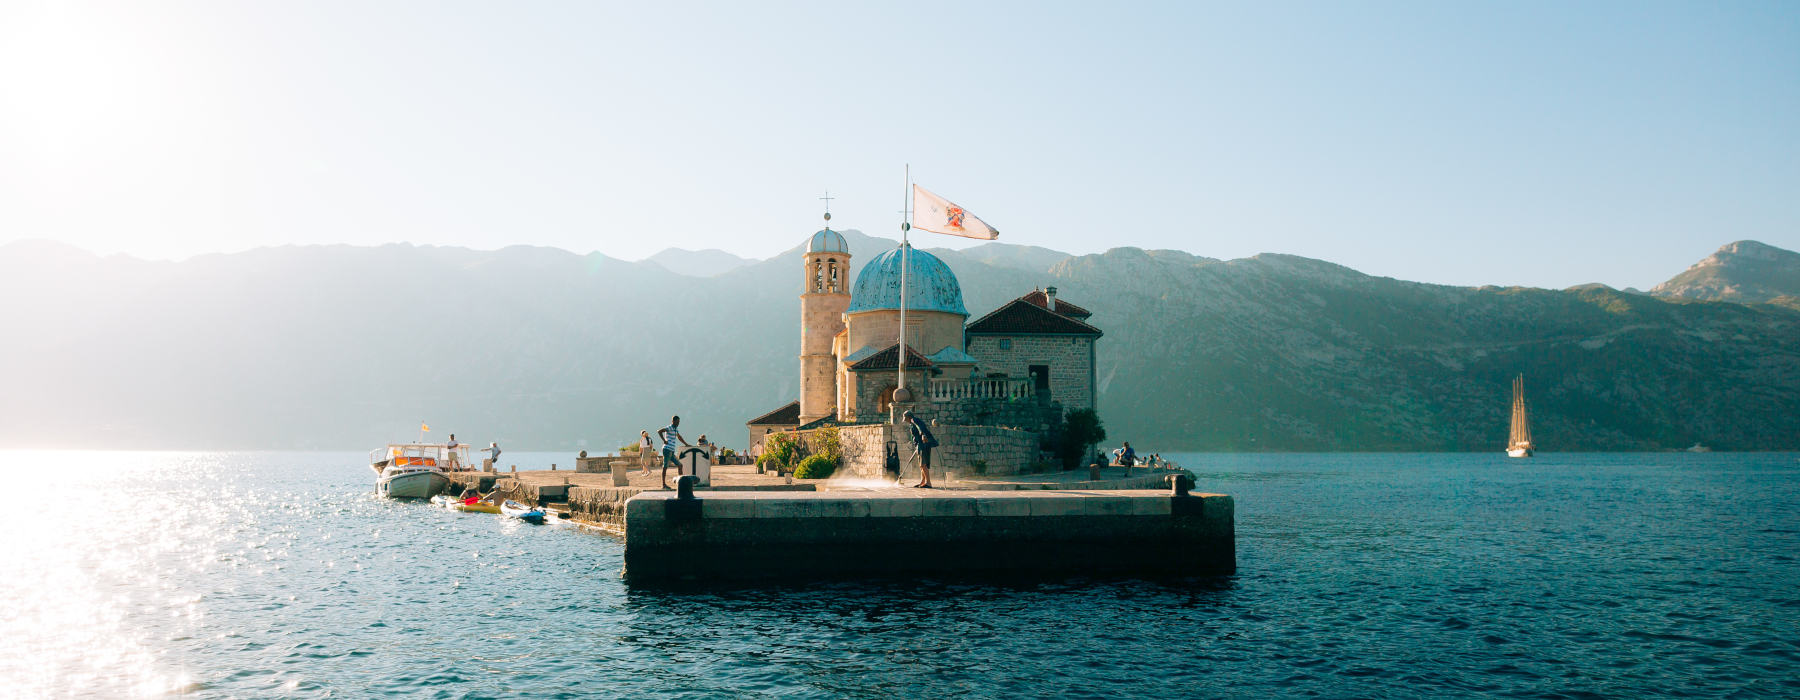 Montenegro<br class="hidden-md hidden-lg" /> Near Frontiers Holidays